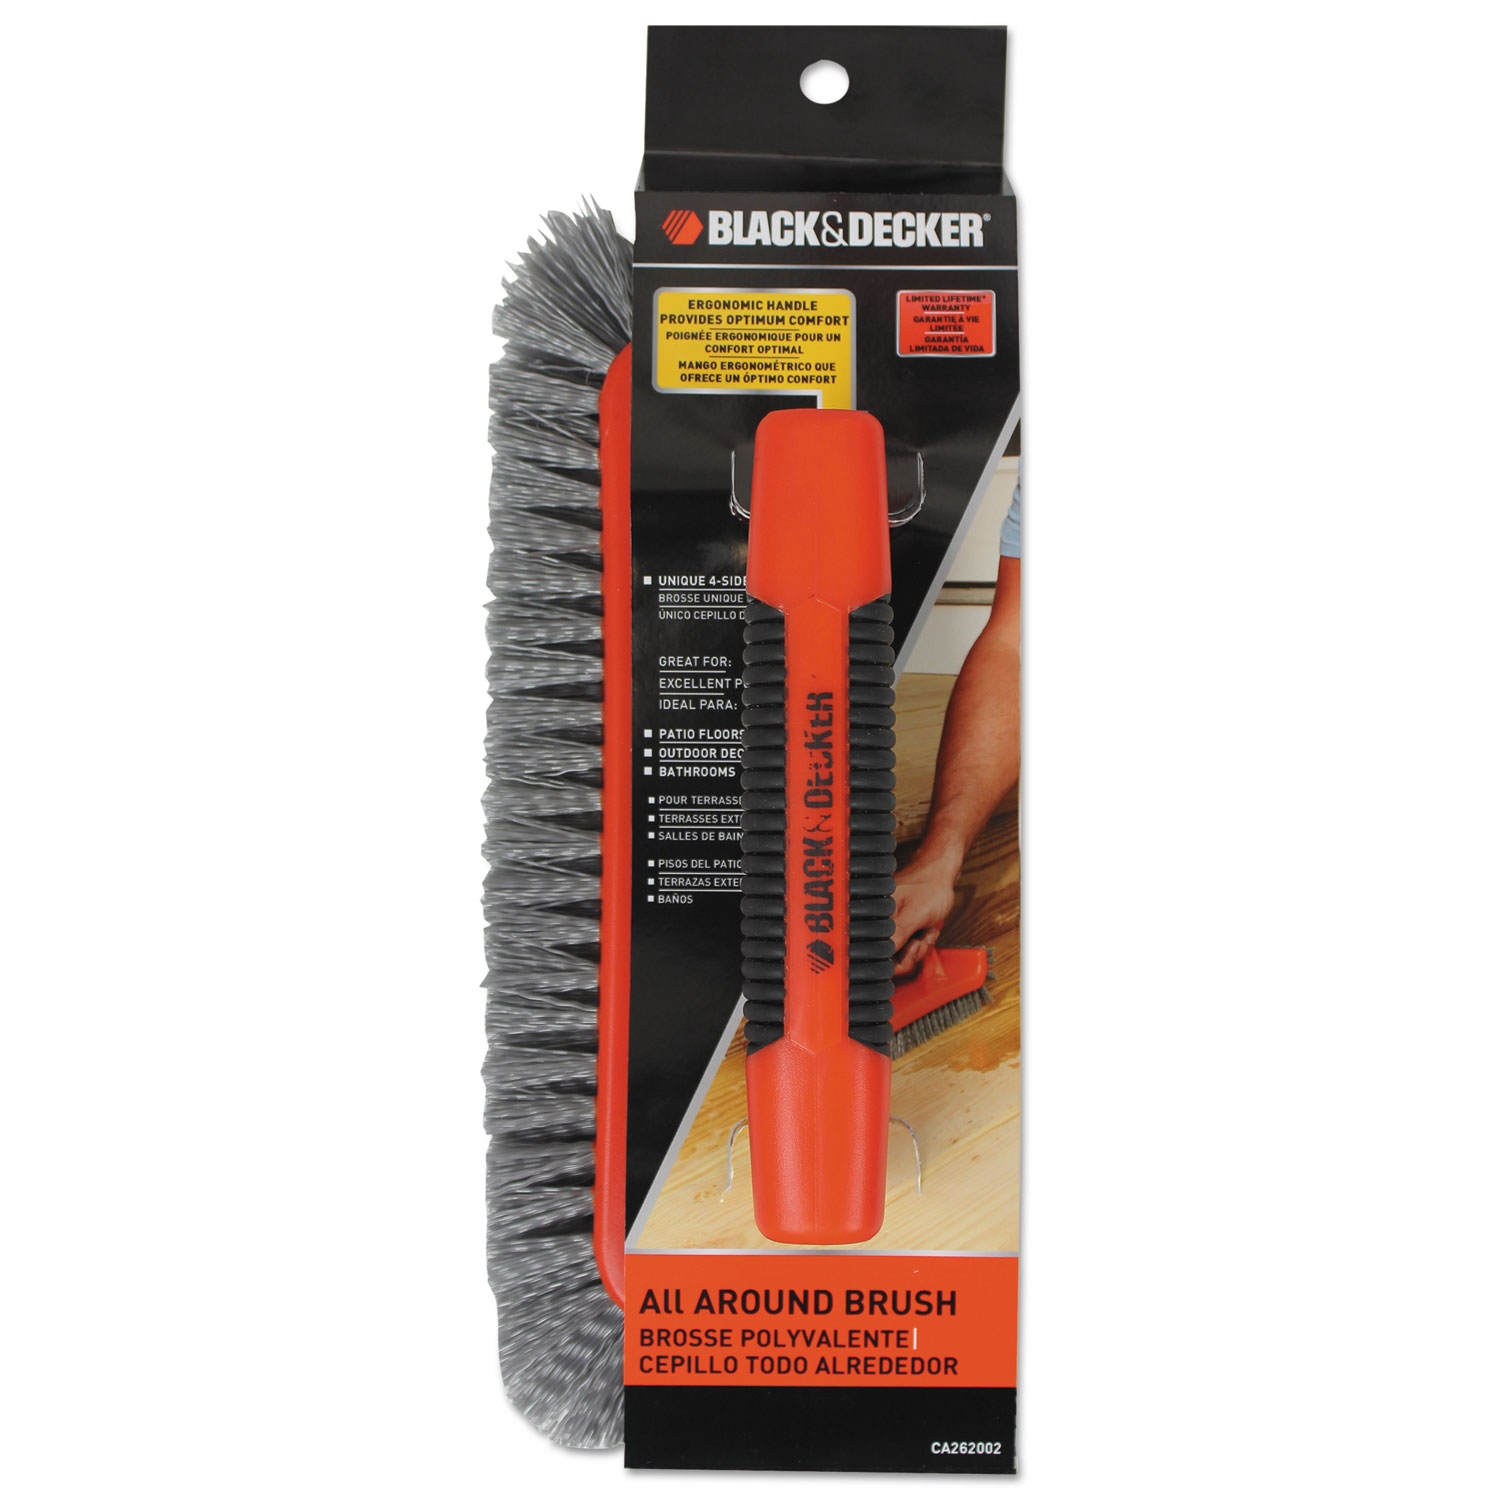 All Around Brush, Plastic, 10 Brush, 1 Bristles, Orange/Gray, 3 Pack